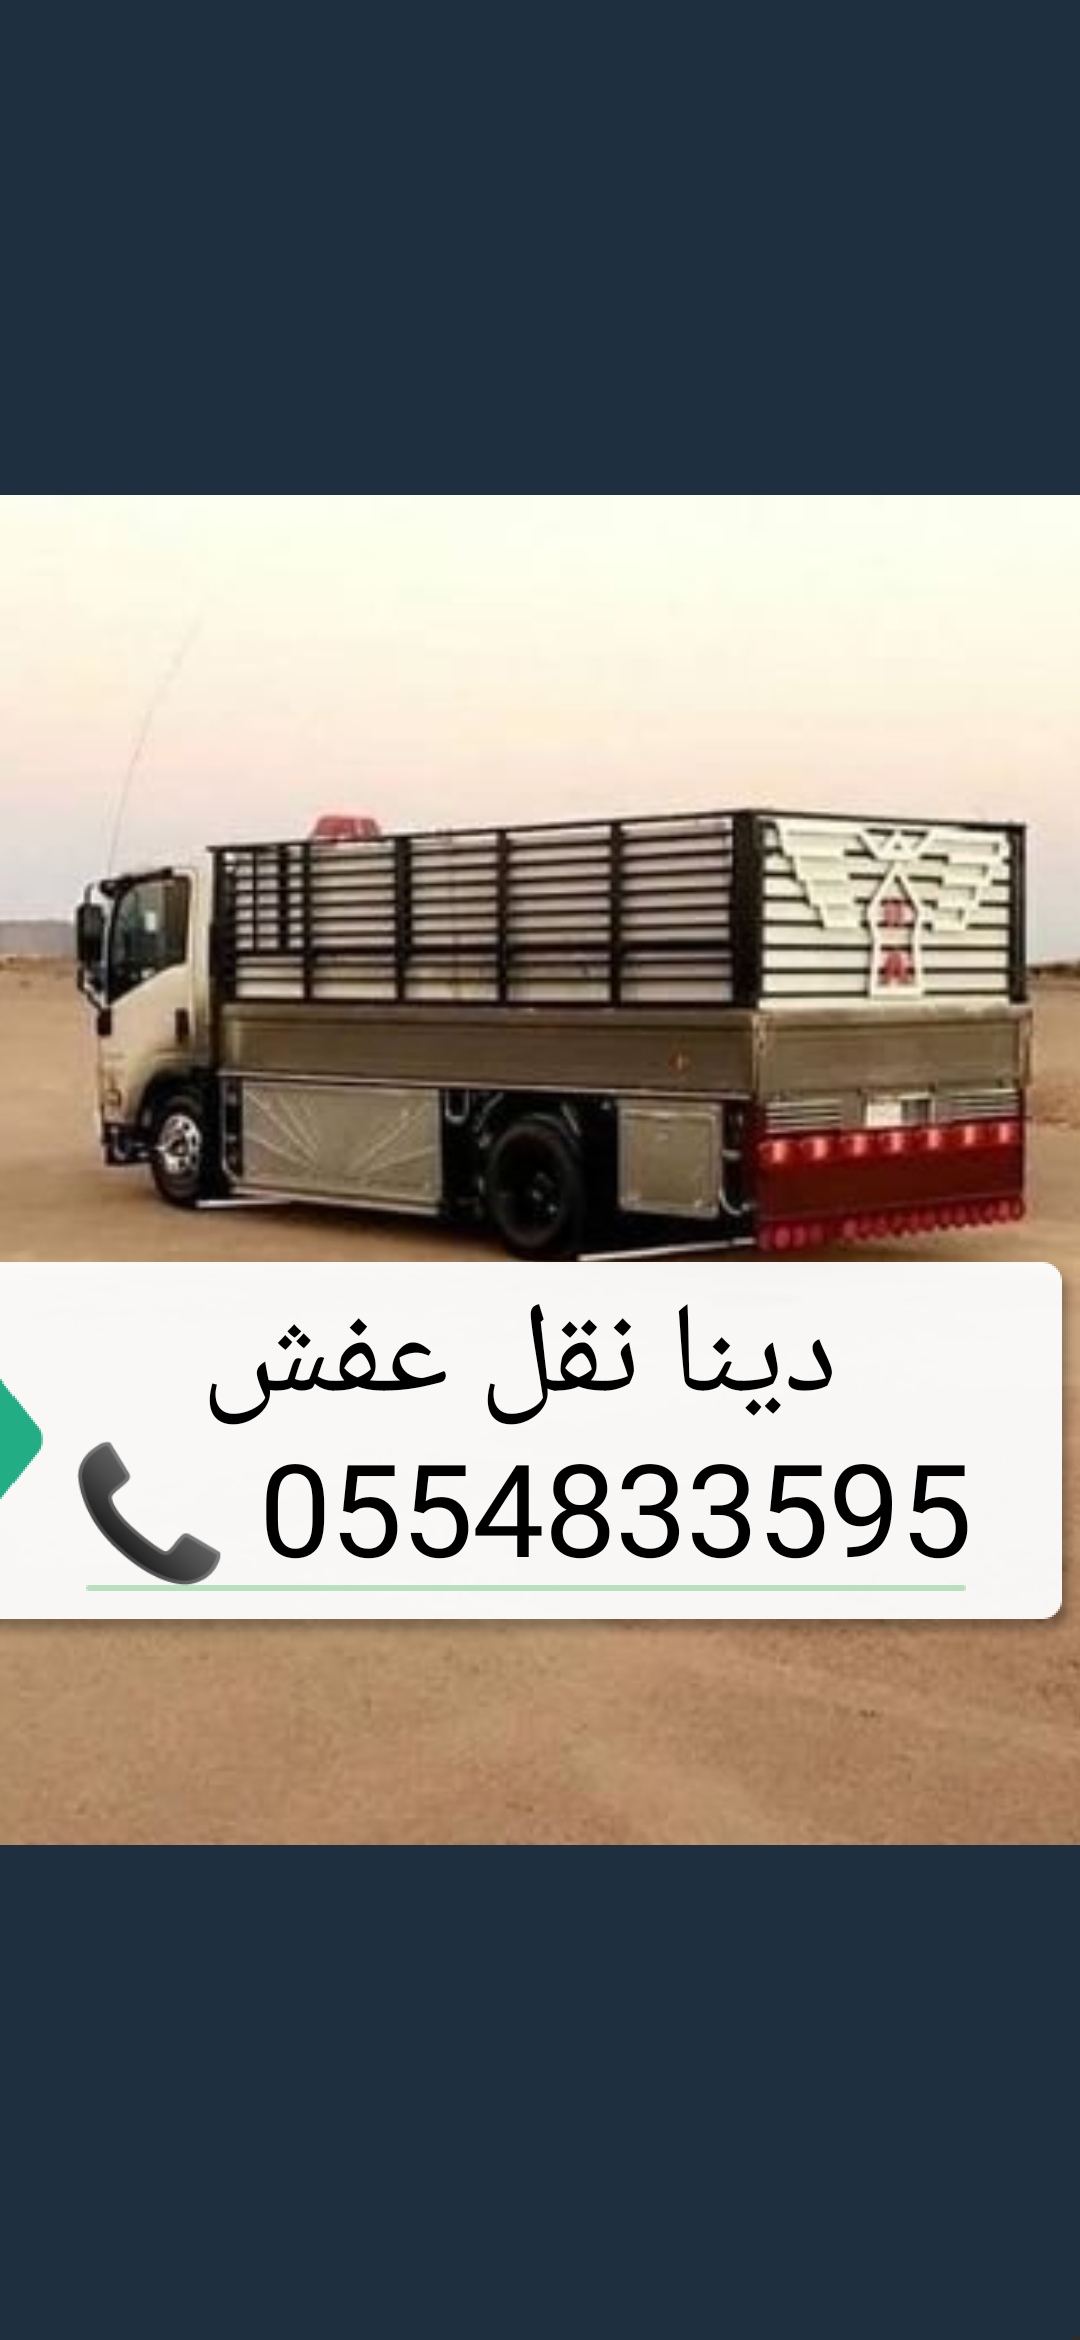  دينا نقل عفش - شراء اثاث مستعمل حي الصحافة شمال الرياض العلياء النرجس الروابي   